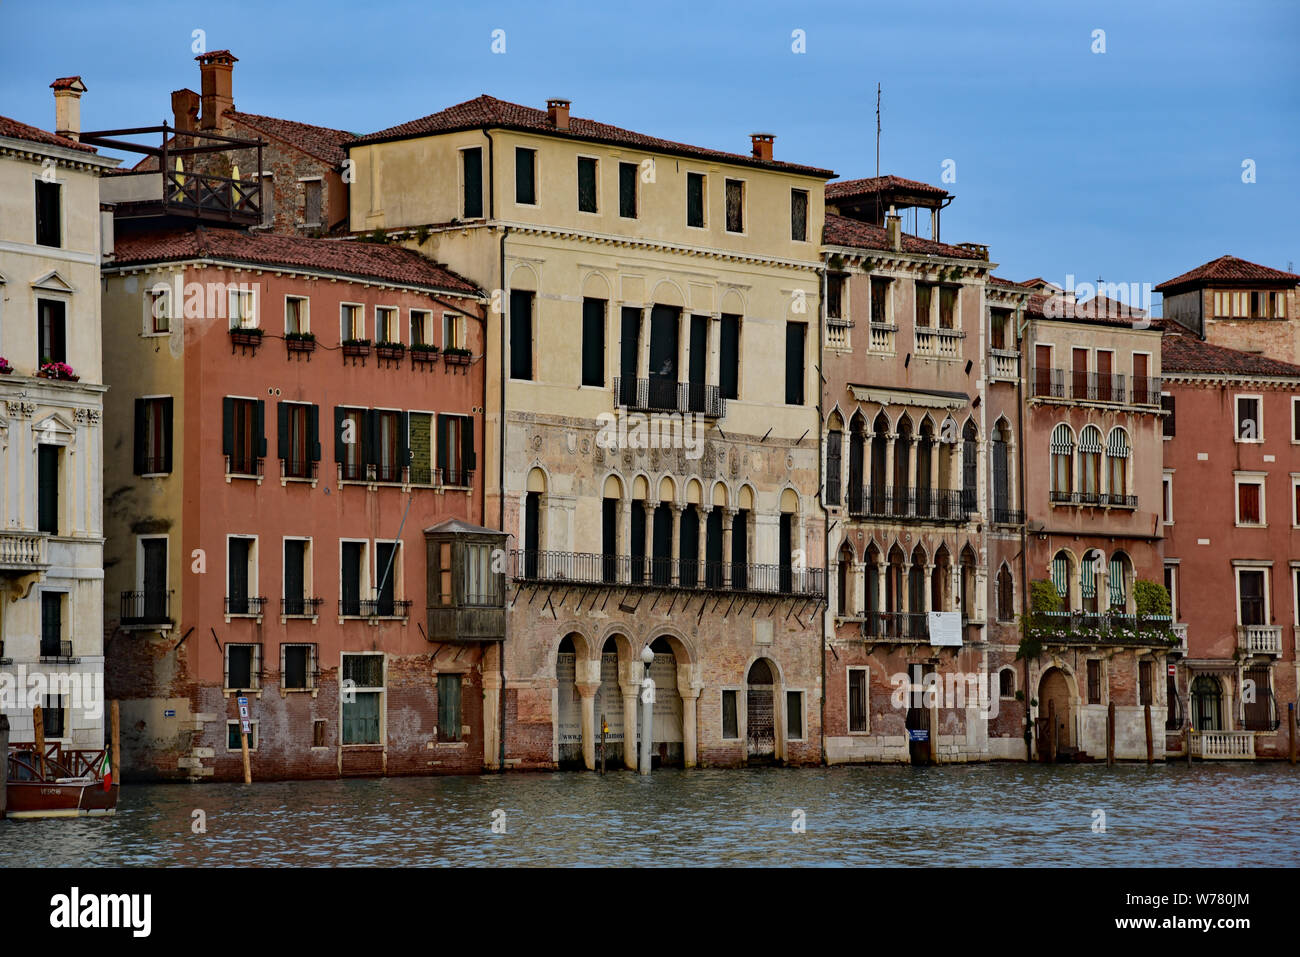 Ca' da Mosto, il più antico palazzo sul Canal Grande, 13esimo secolo architettura bizantina, Cannaregio, Venezia, Veneto, Italia, Europa. Foto Stock